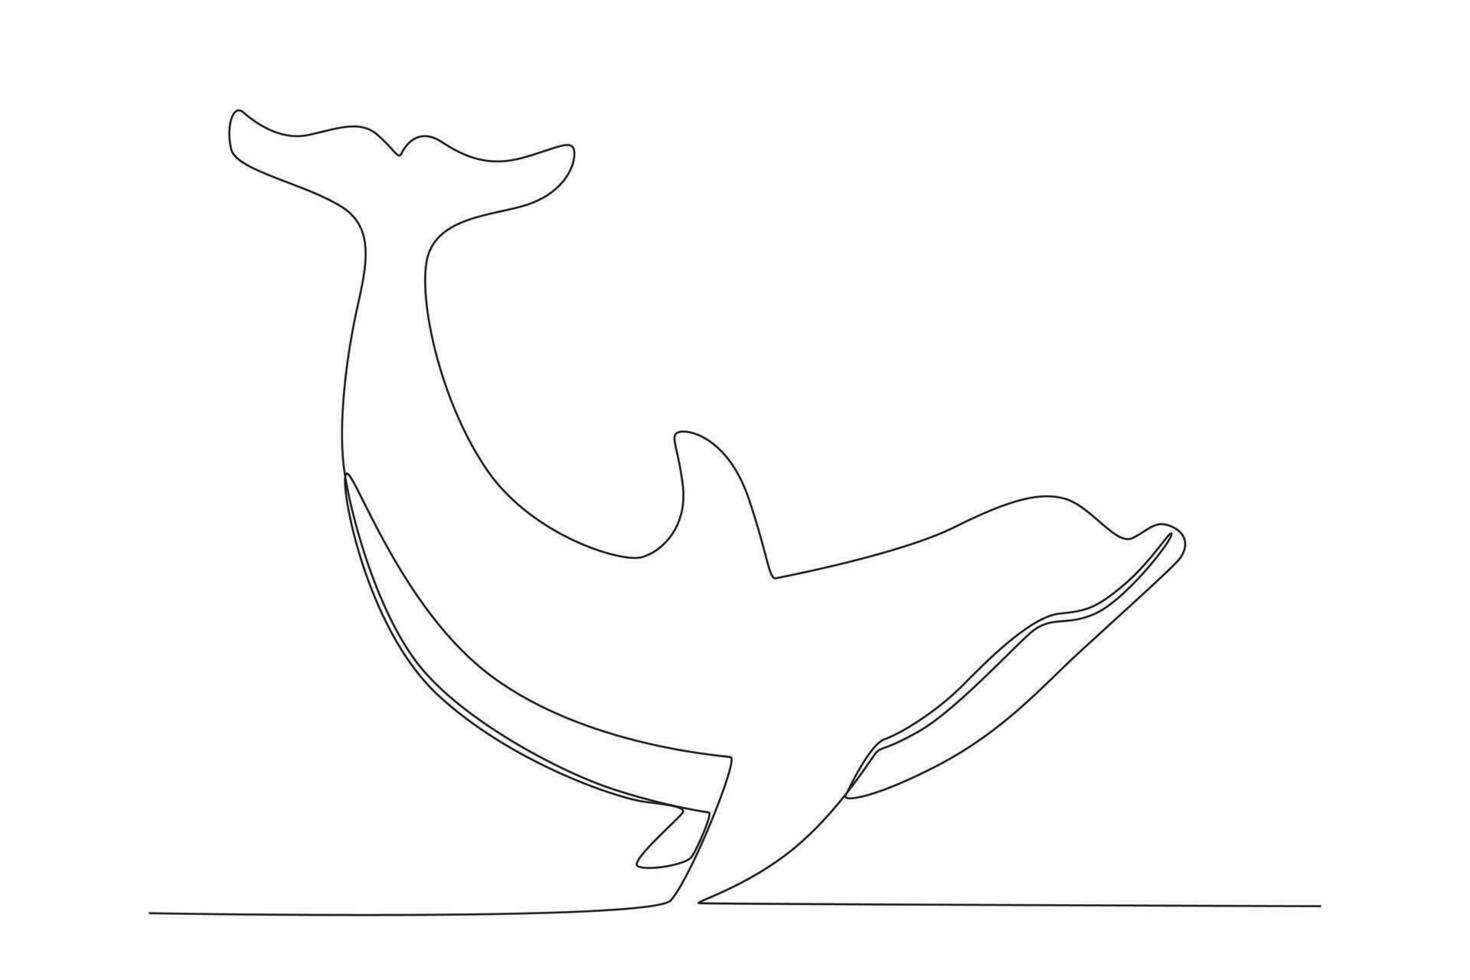 continu één lijn tekenen van schattige blauwe dolfijnen, dolfijnen springen en trucs uitvoeren met bal voor entertainmentshow. dierenmascotte voor zwembad. enkele lijn ontwerp vector grafische afbeelding